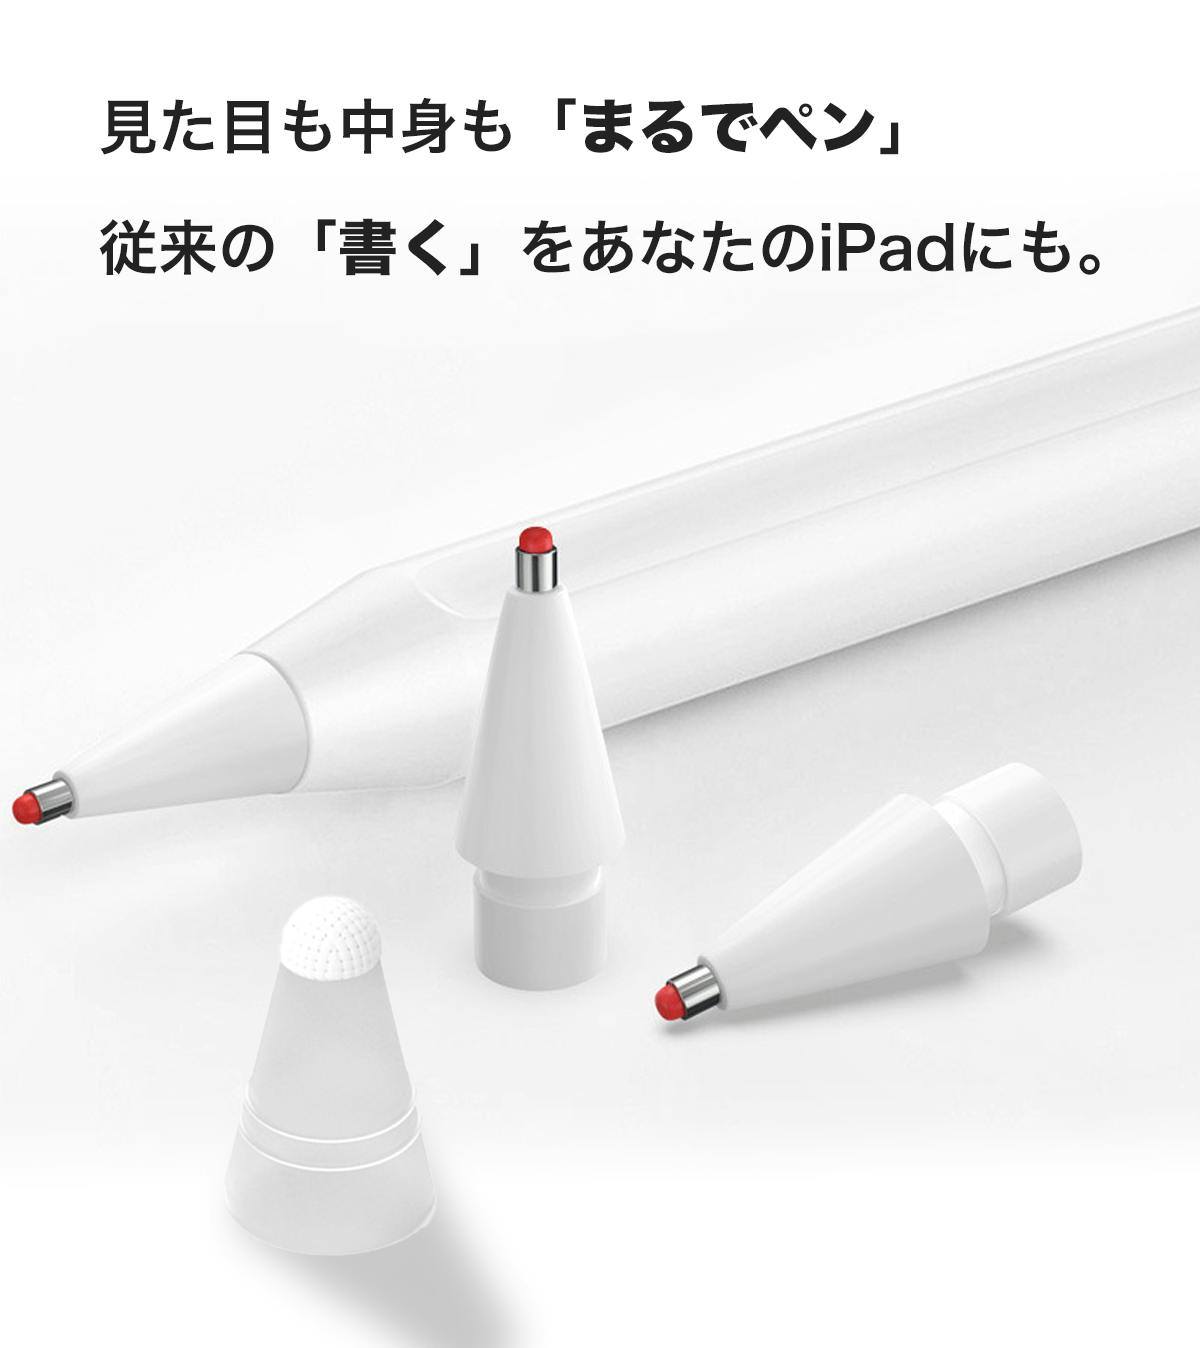 替え芯 1個 白 Apple pencil ペン先 アップル ペンシル ペン先 - iPad 